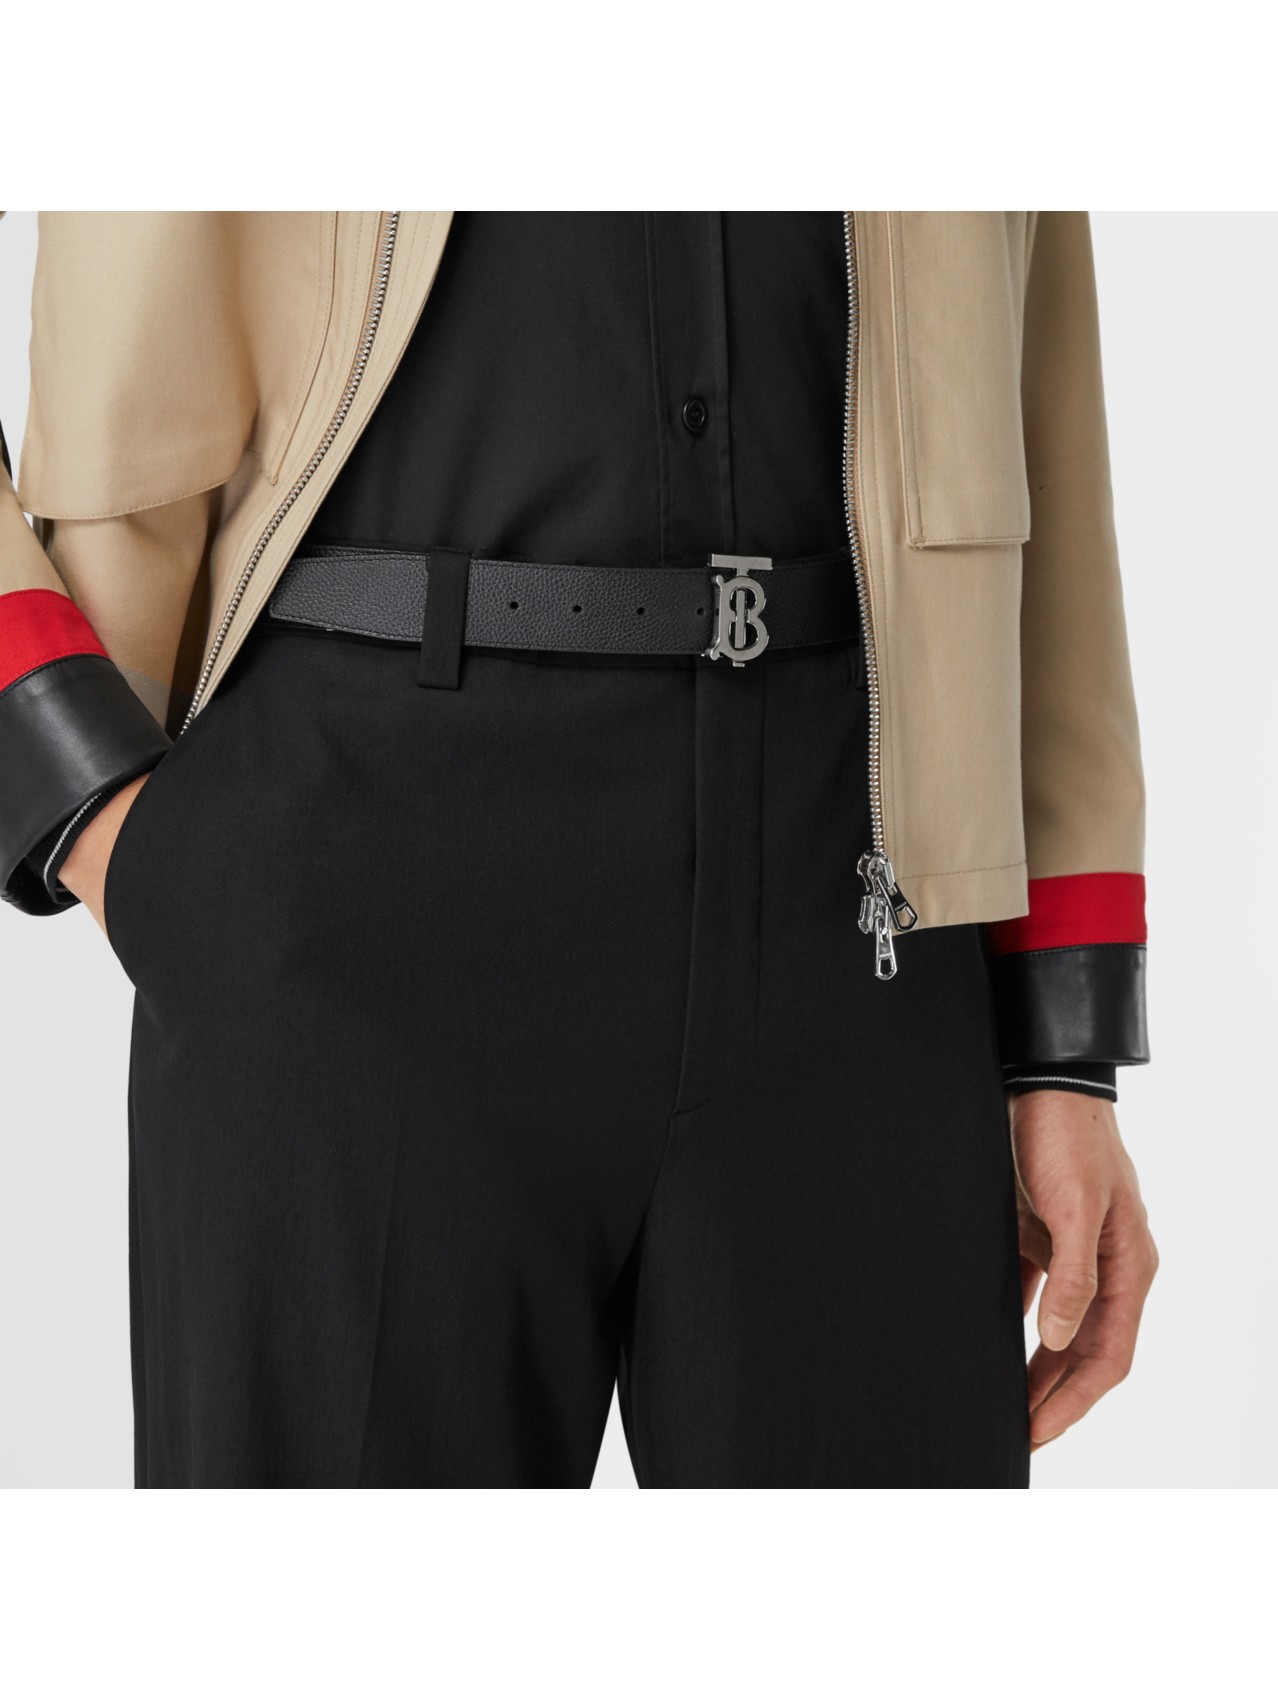 Designer Belts | Leather Belts Official